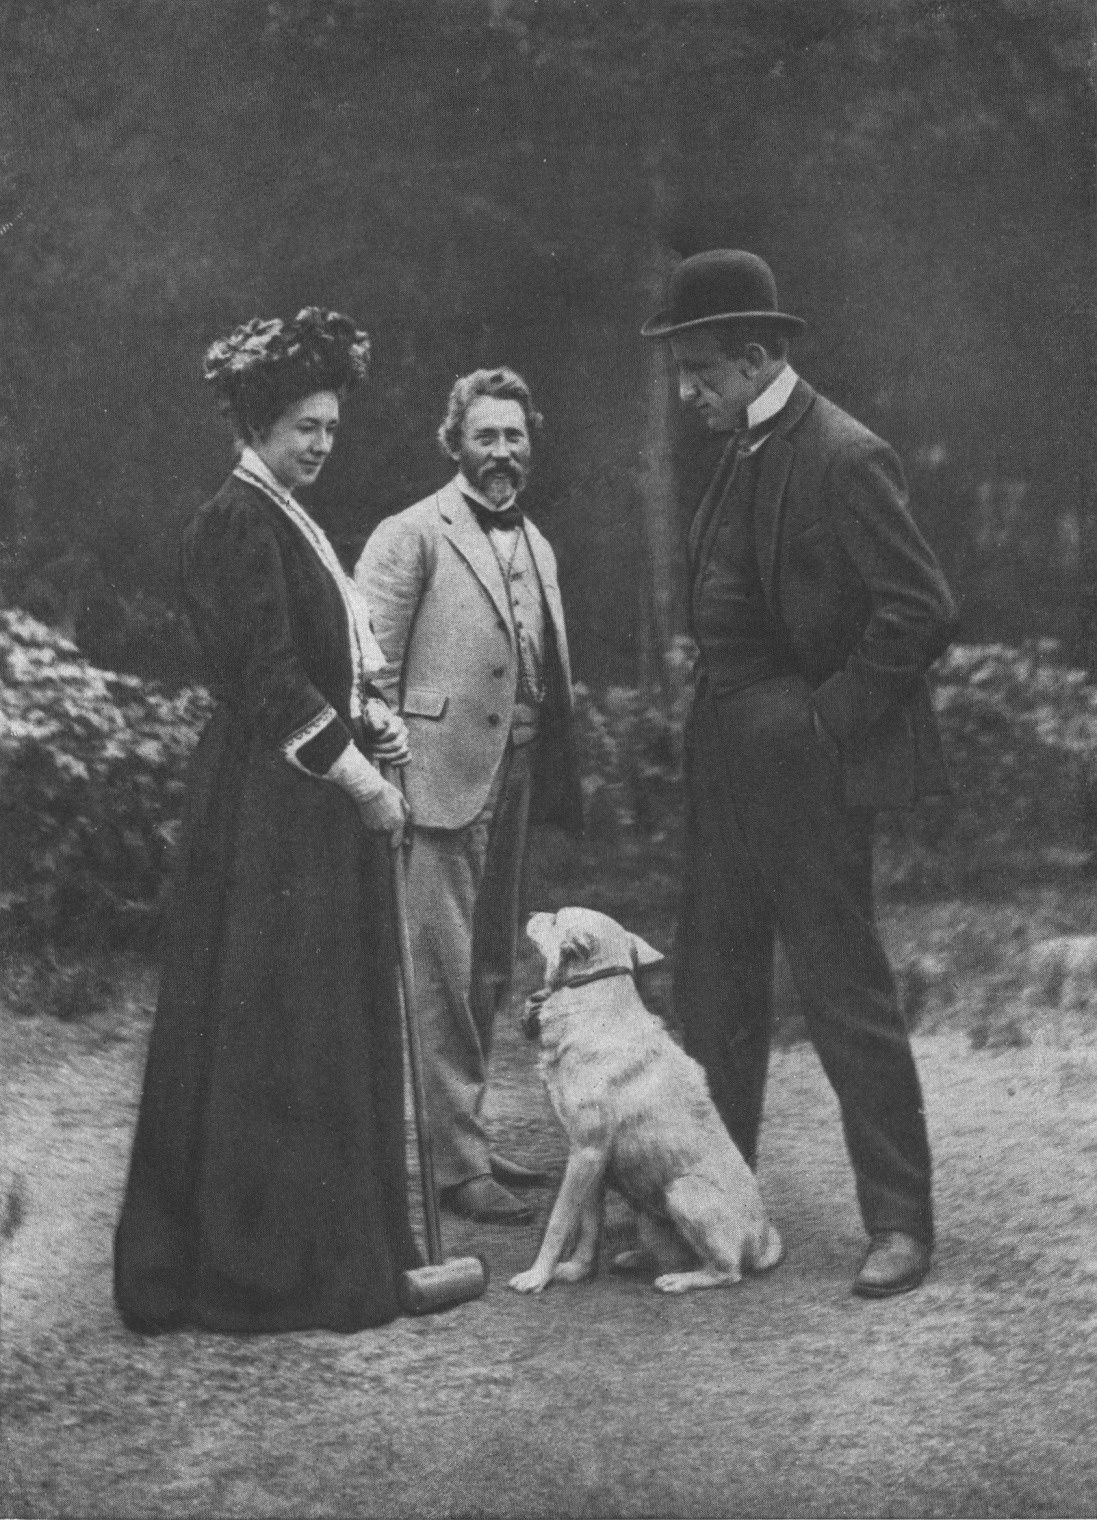 П.П. Трубецкой, И. Е Репин и жена П.П. Трубецкого в «Пенатах». 1908